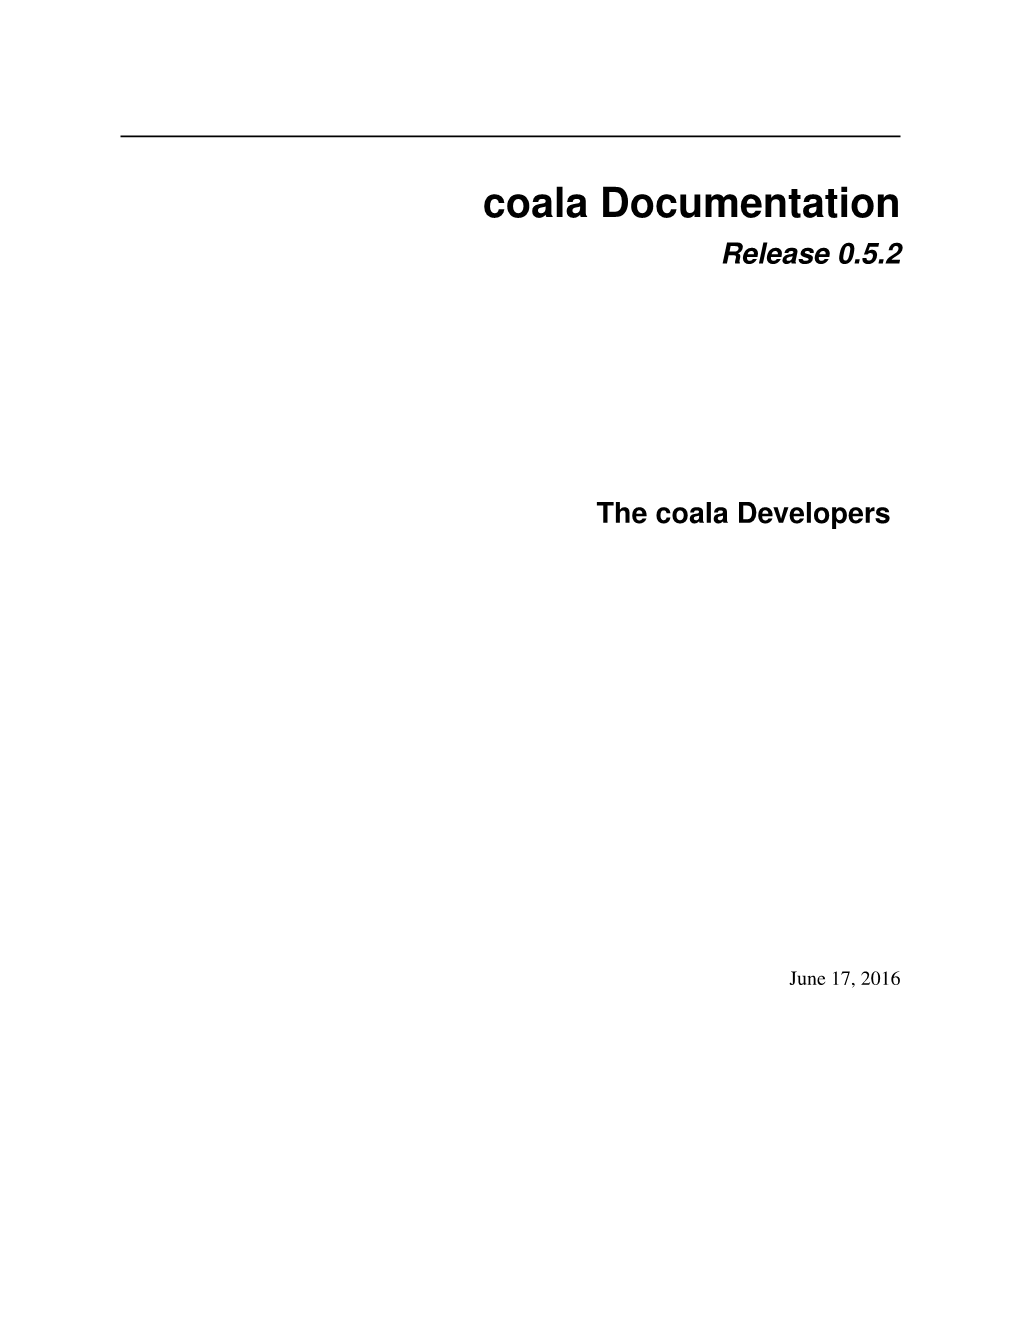 Coala Documentation Release 0.5.2